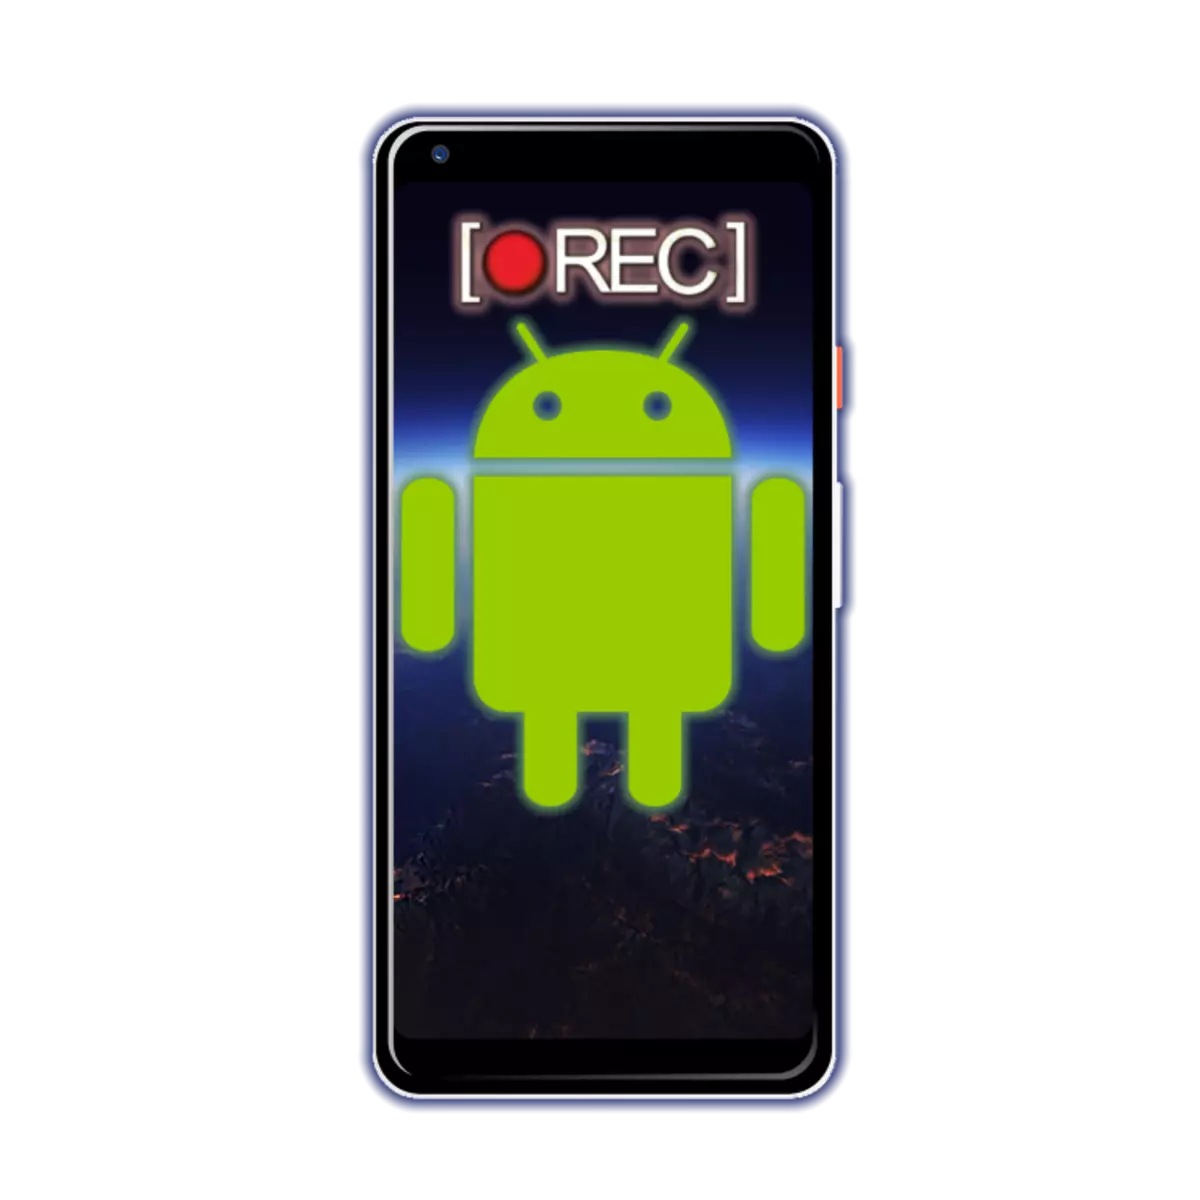 Rekhoda ividiyo kwiscreen kwi-Android